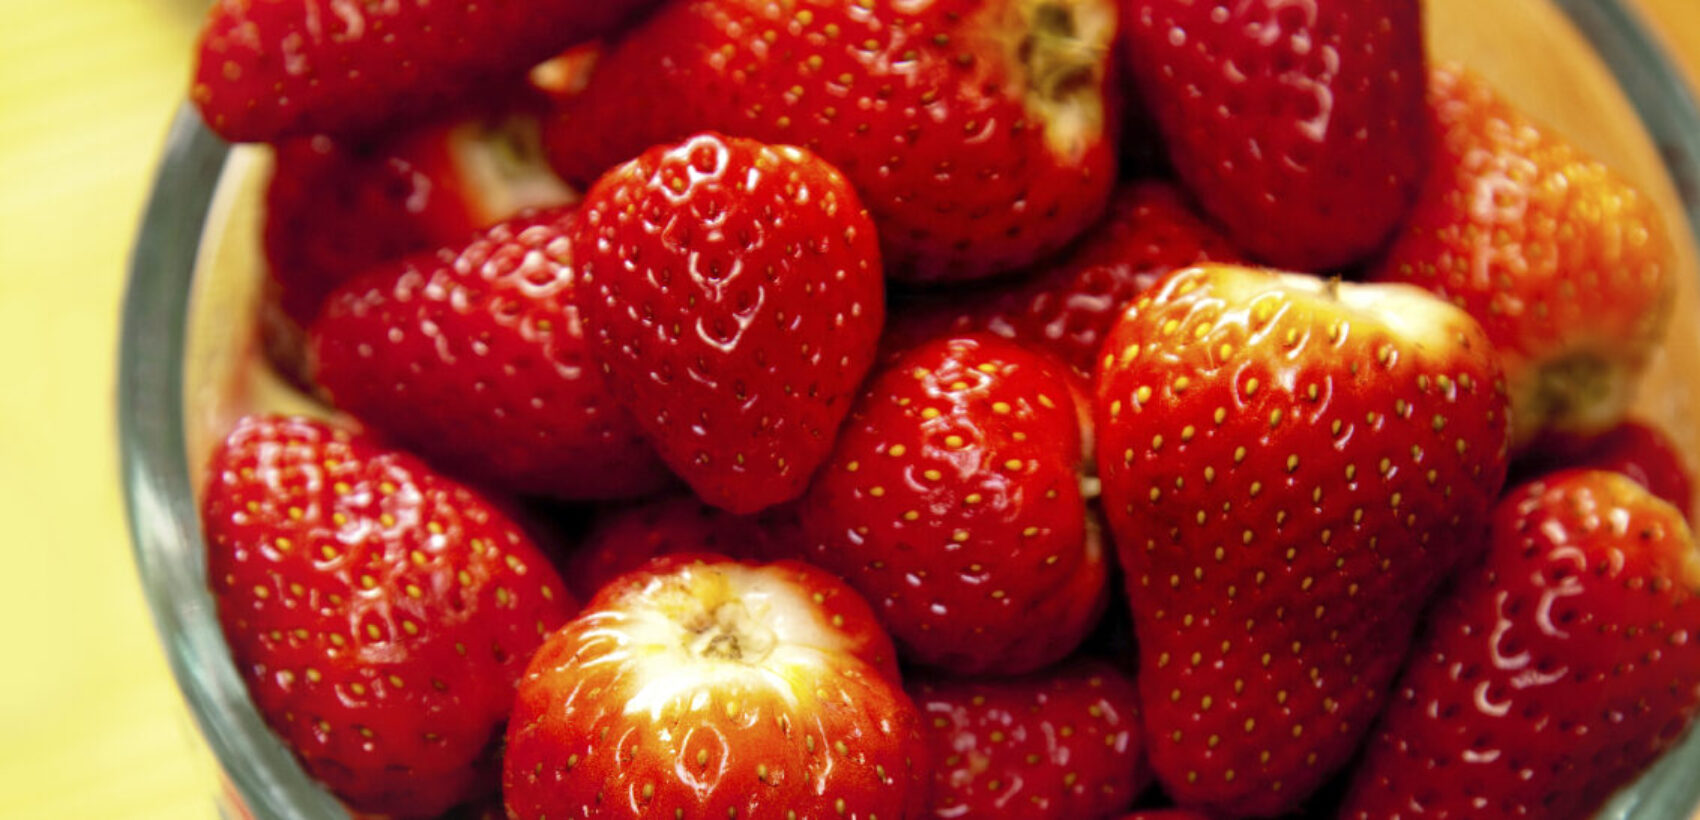 Croquettes de fraises au coulis de framboises